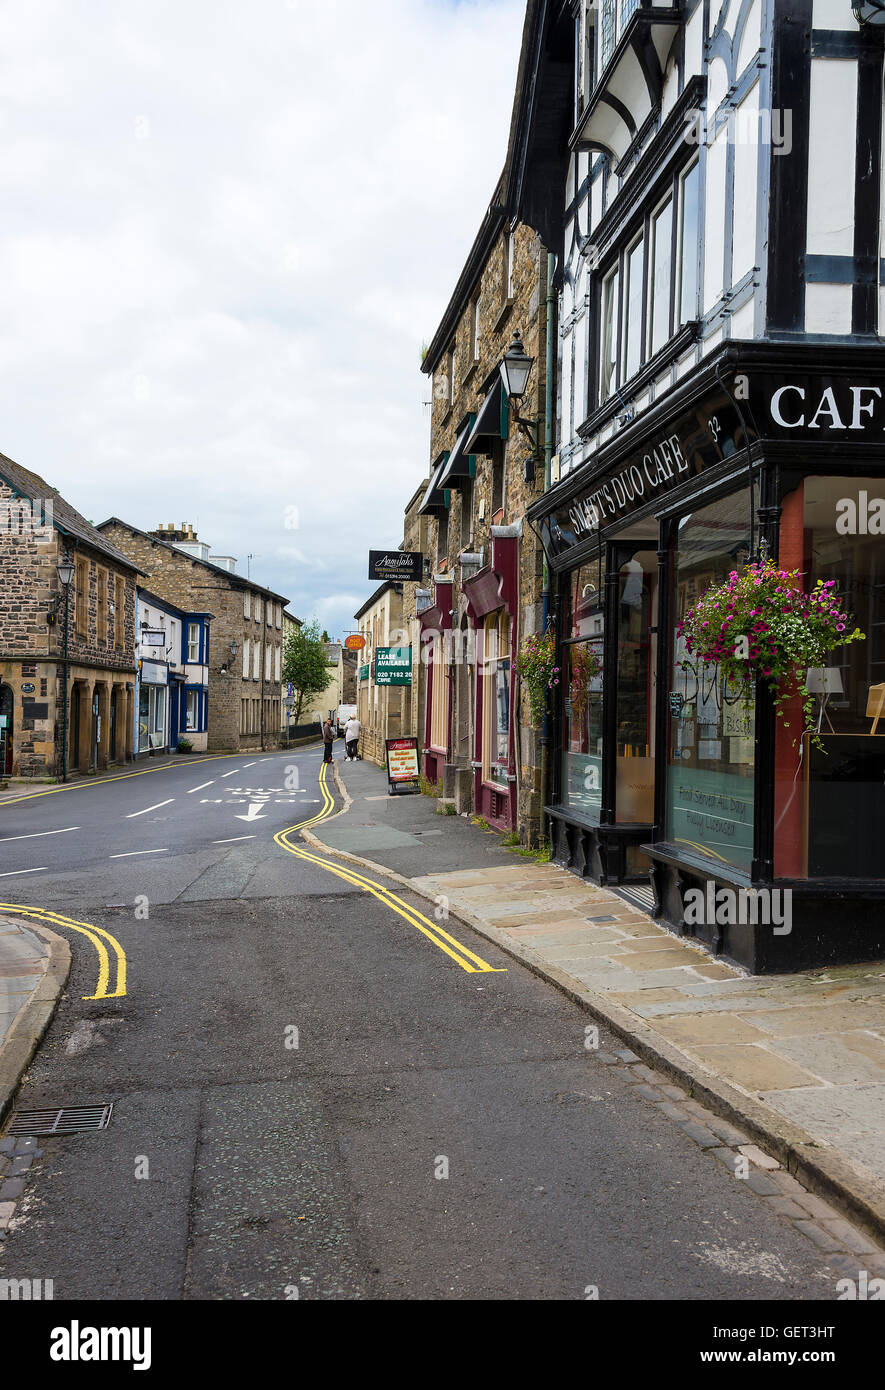 La rue principale étroite à Sedbergh avec des magasins, hôtel et hébergement de bureau Cumbria Angleterre Royaume-Uni Banque D'Images